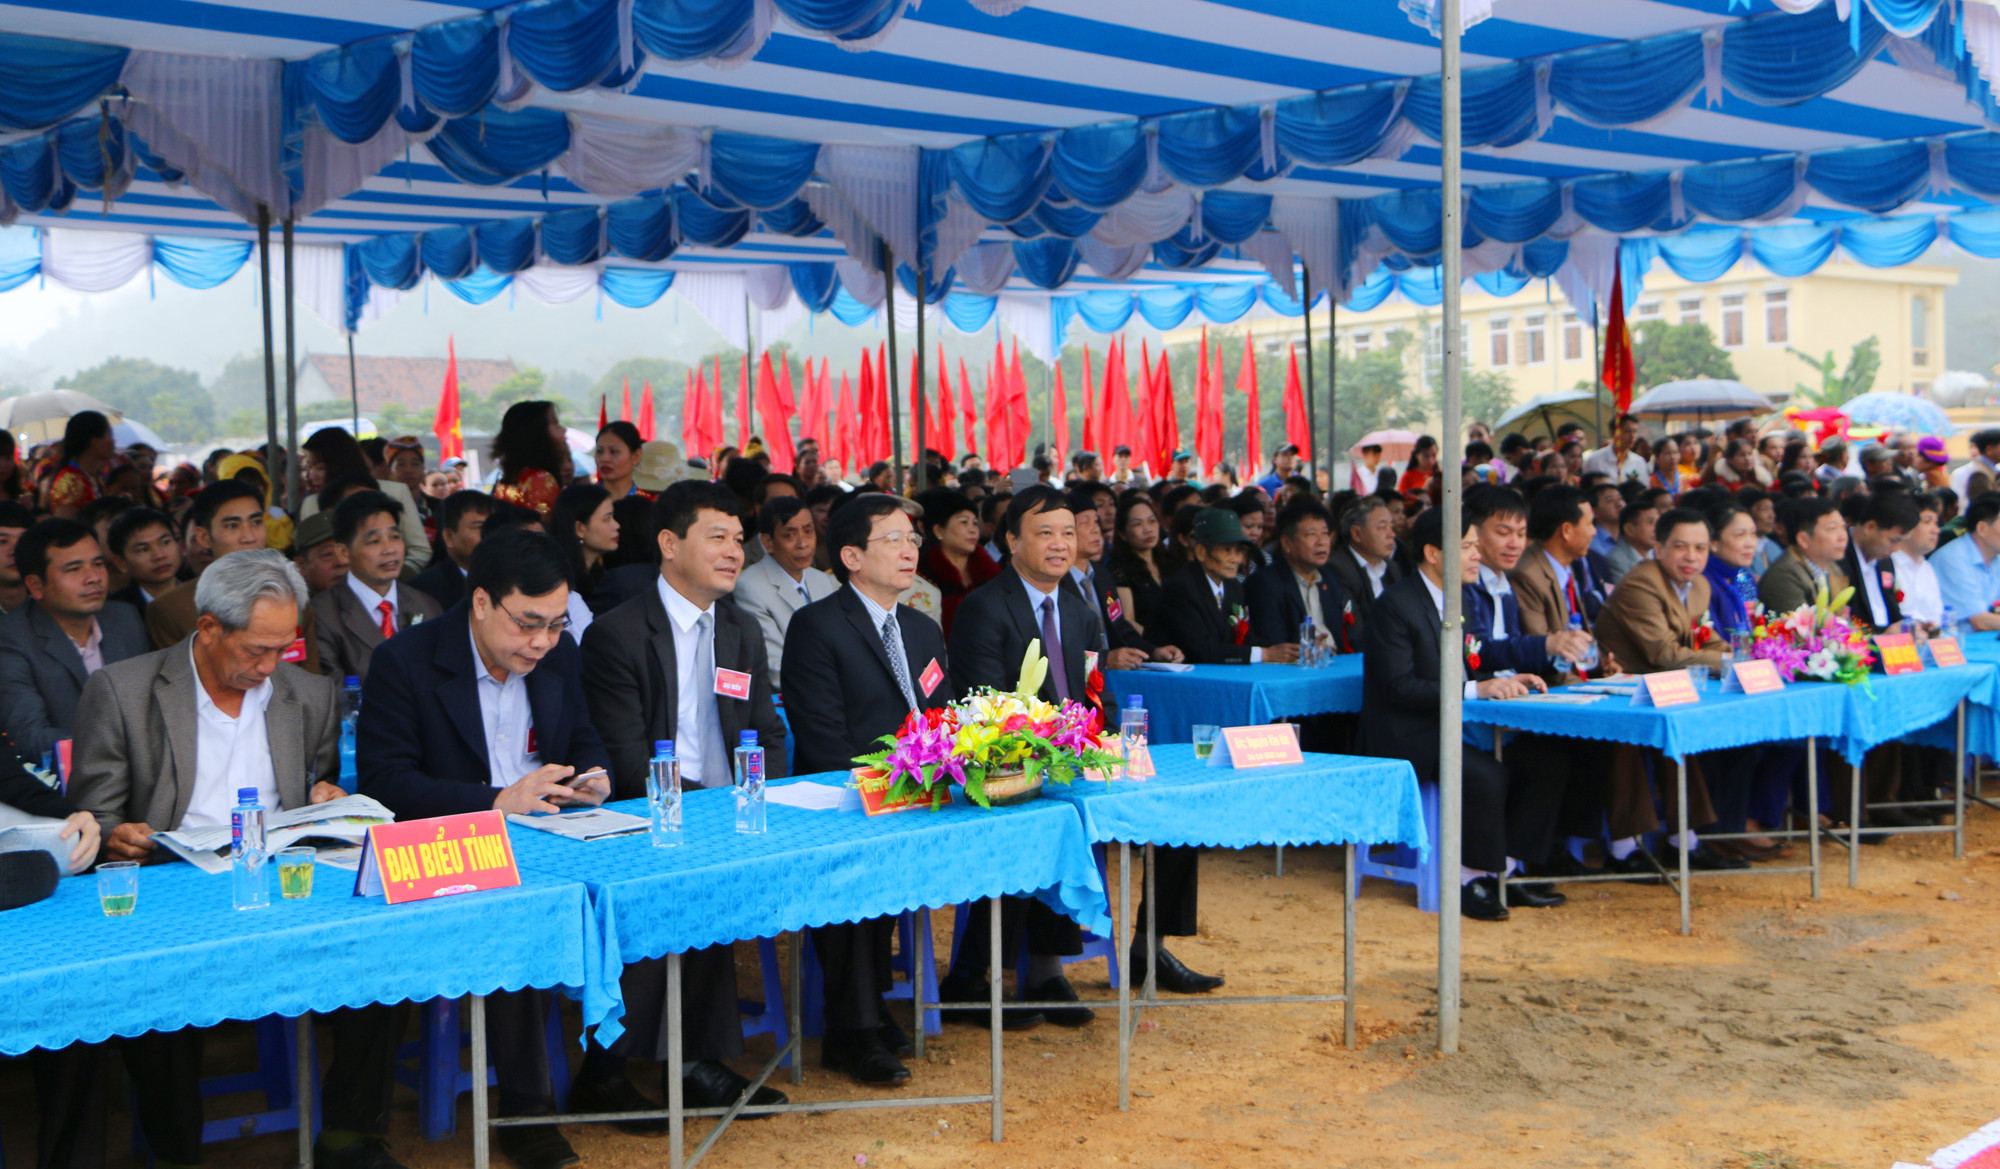 Các đại biểu đại diện cho các ban, ngành cấp tỉnh và huyện Tương Dương về dự, chung vui với bà con xã biên giới Tam Quang. Ảnh: Nguyễn Hải